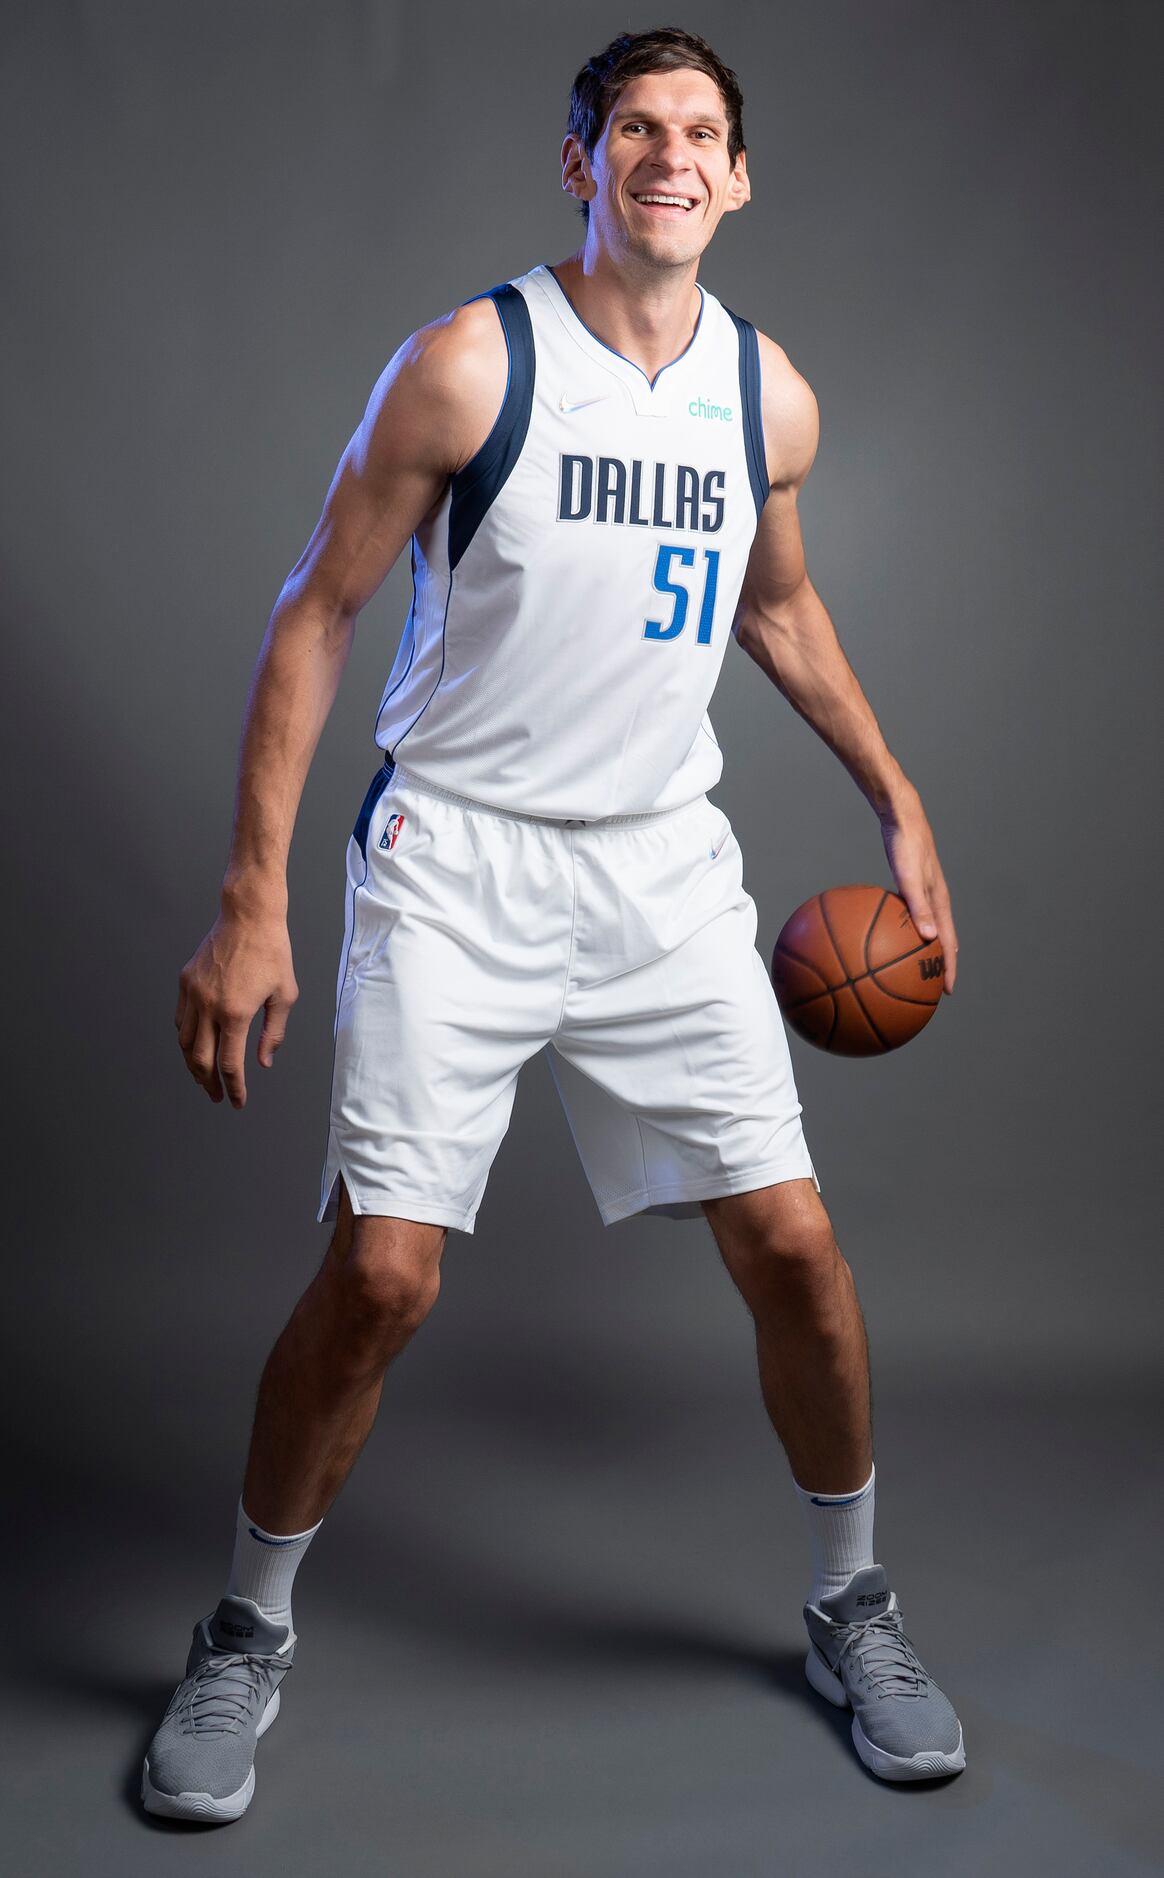 Dallas Mavericks guard Boban Marjanovic (51) poses during NBA